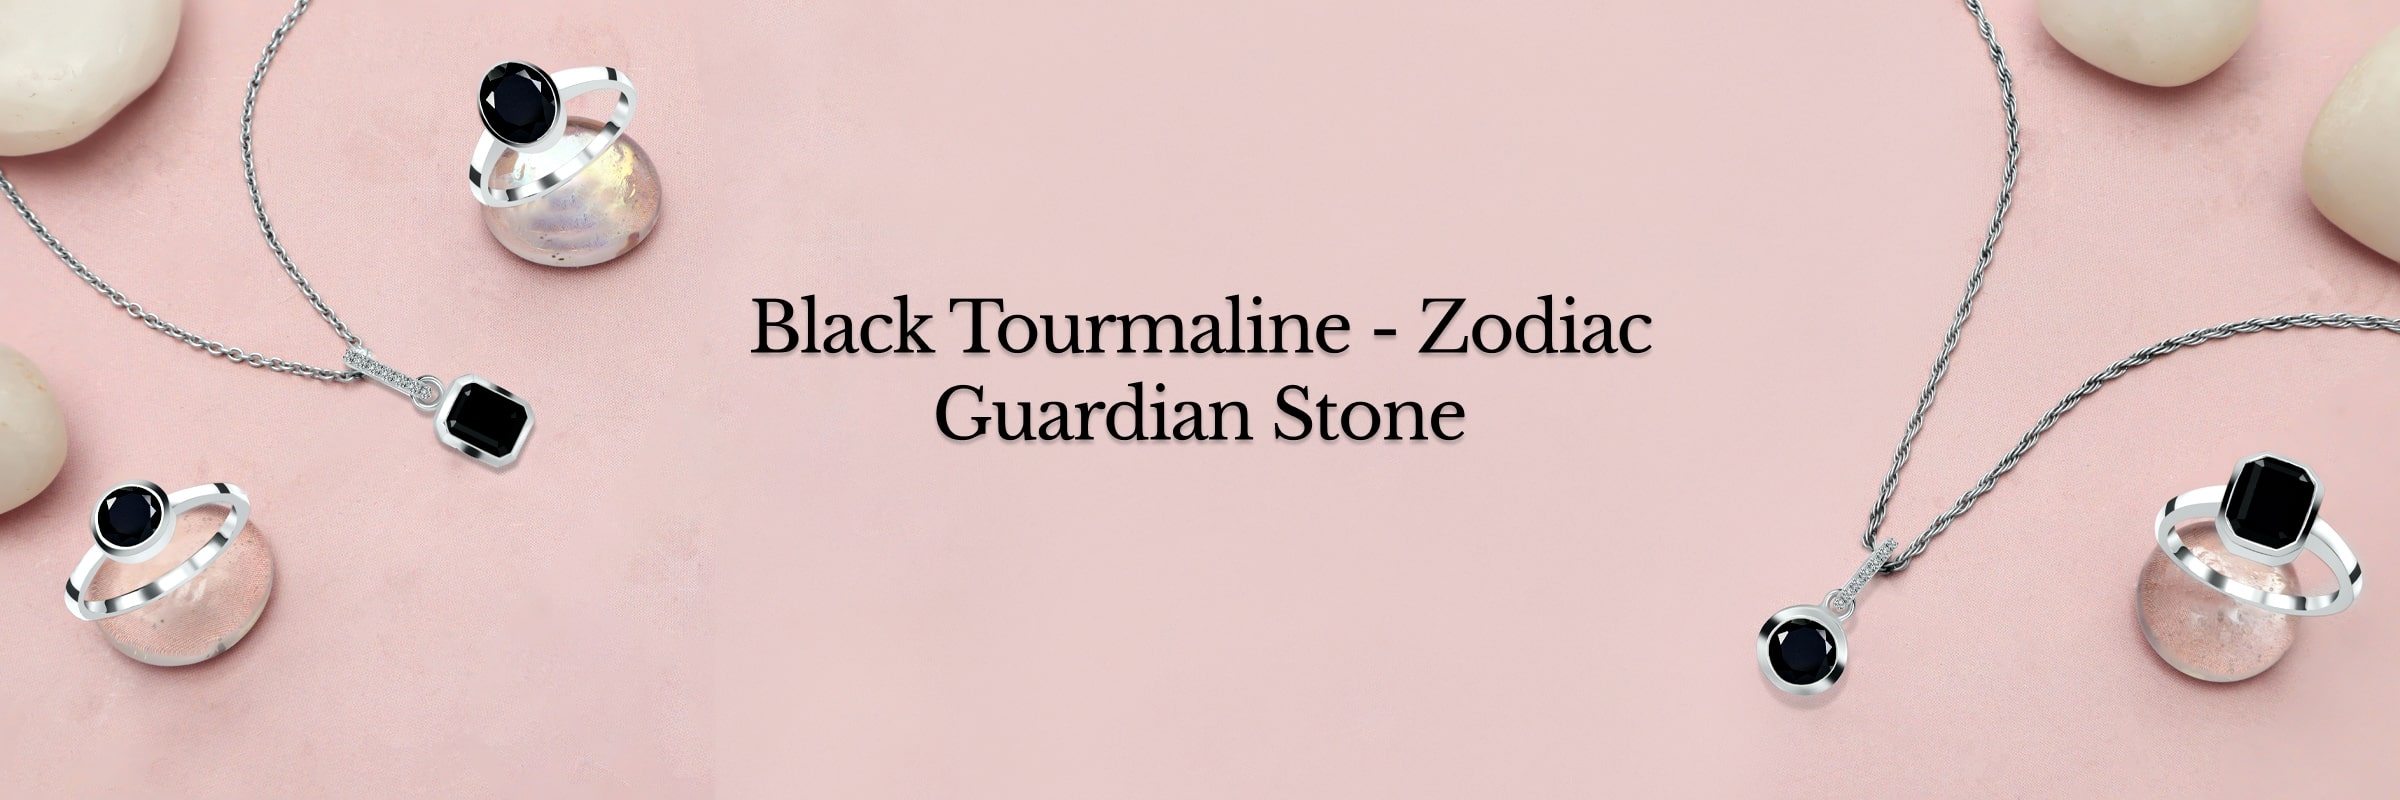 Zodiac associated with black tourmaline